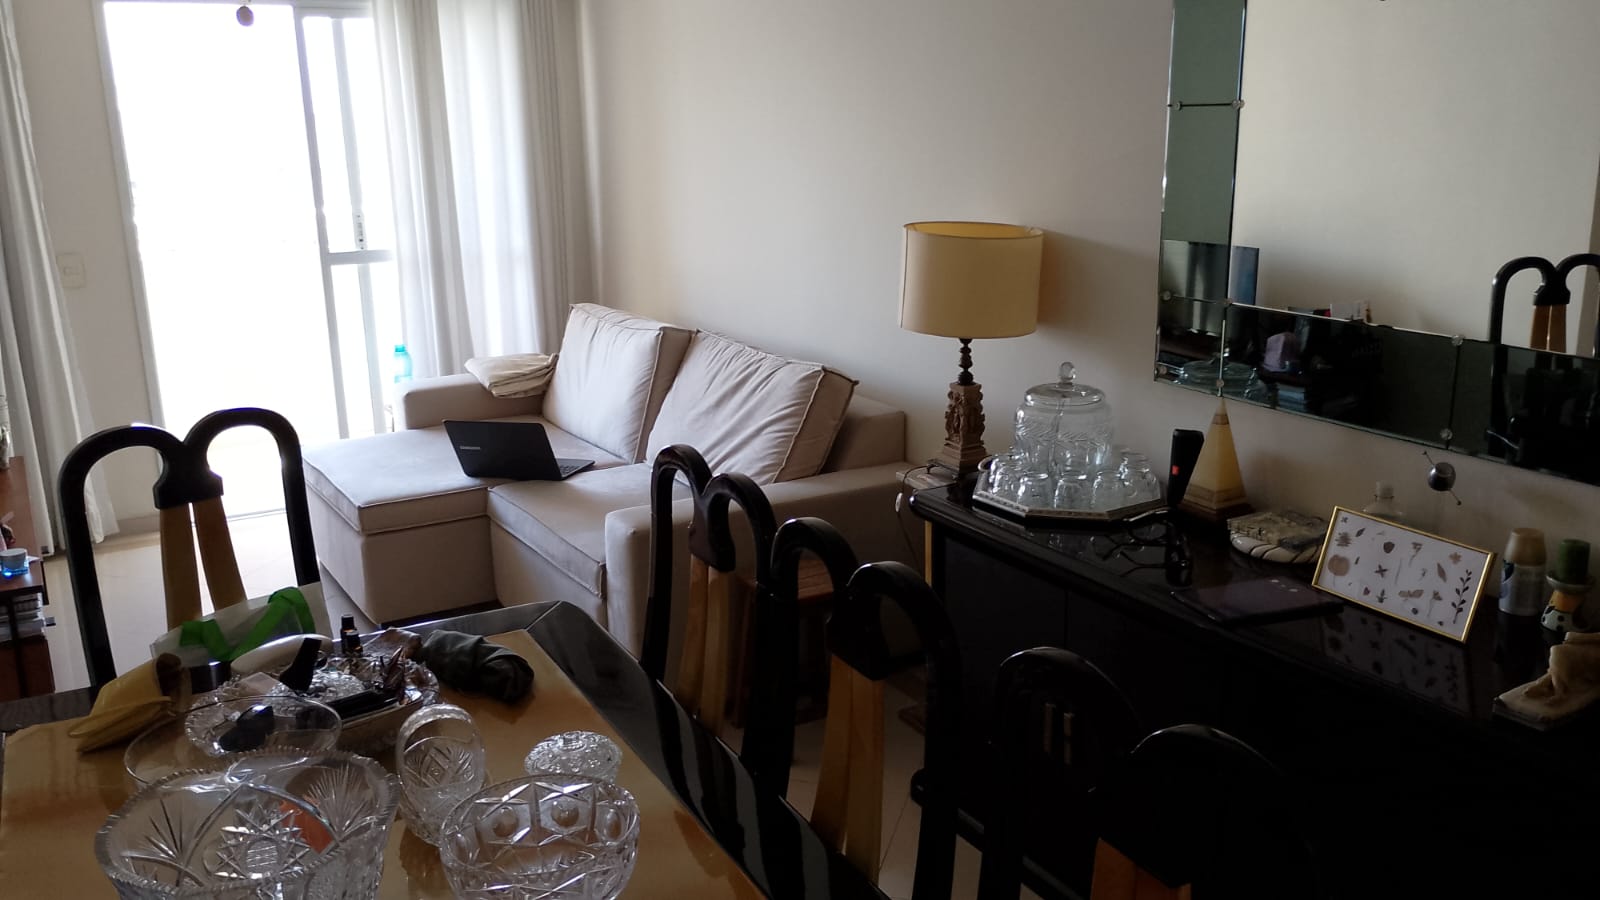 Apartamento Boqueirao 2 dormitorios 1 suite -Sala 2 ambientes com varanda – 2 garagens e lazer - foto 9